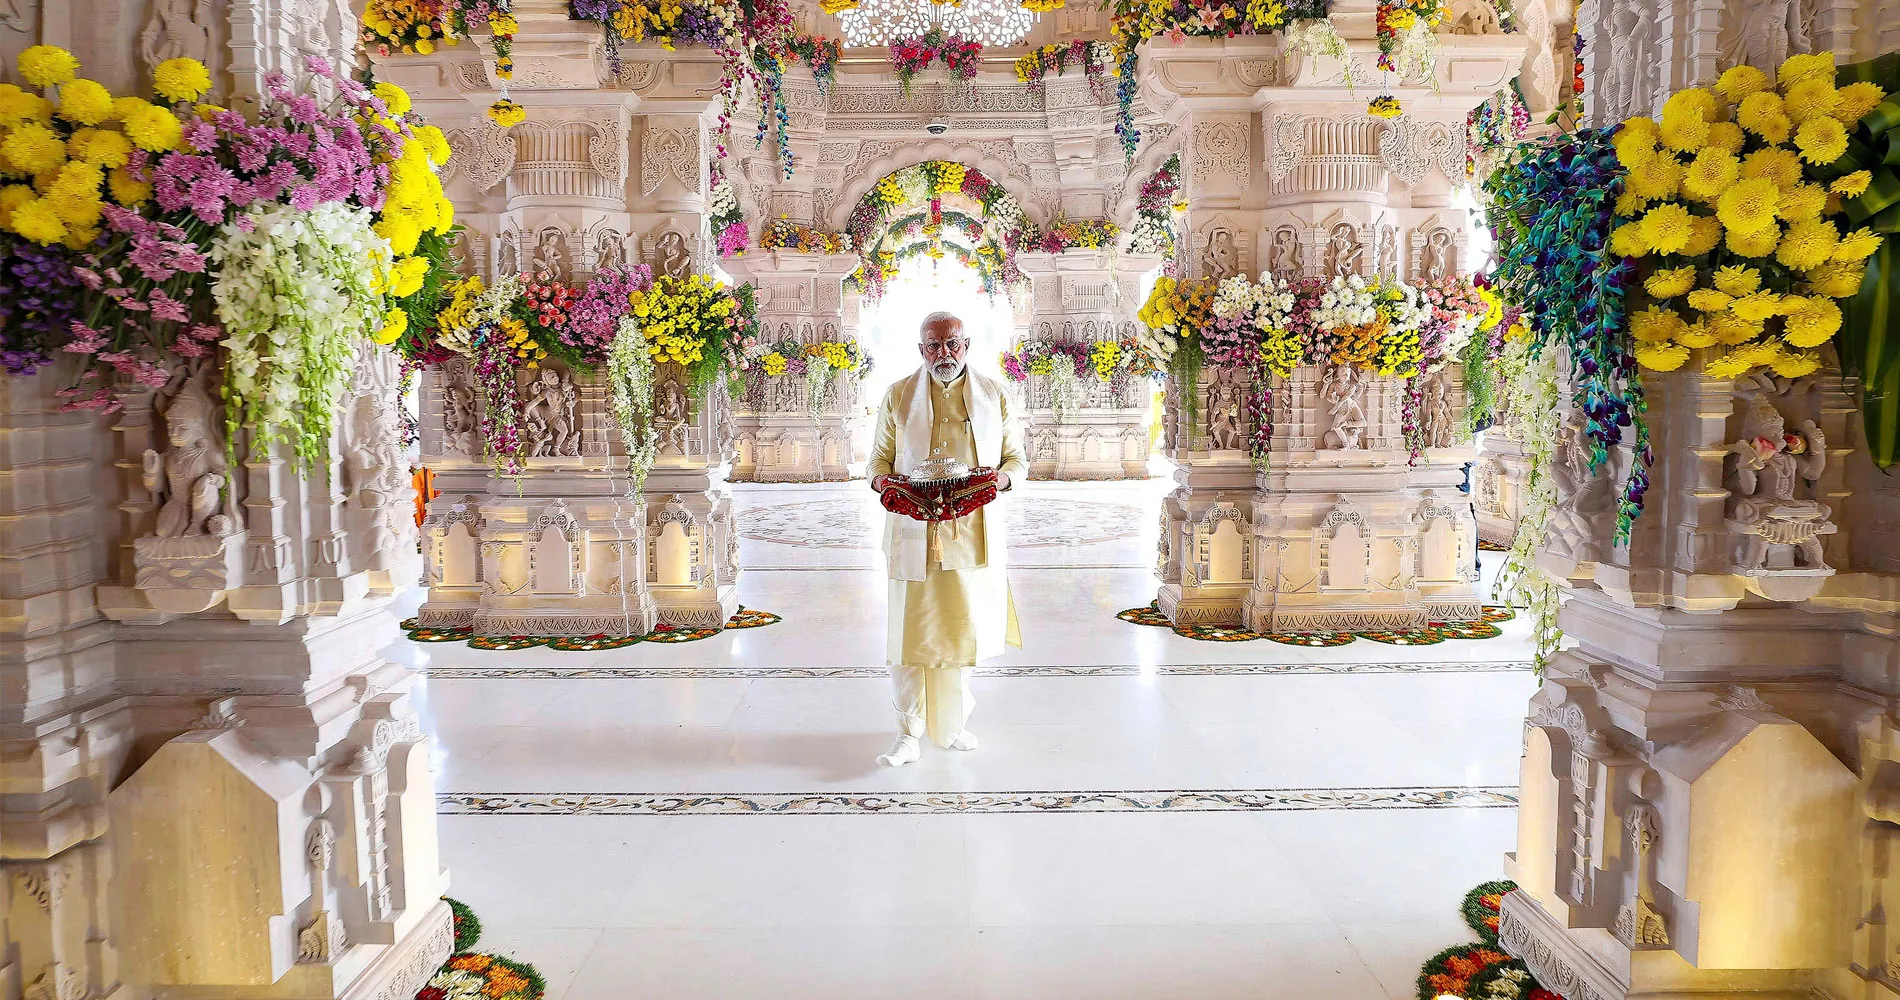 Le Programme de réélection de Modi : Le temple de Ram, le nationalisme hindou et la rhétorique anti-musulmane